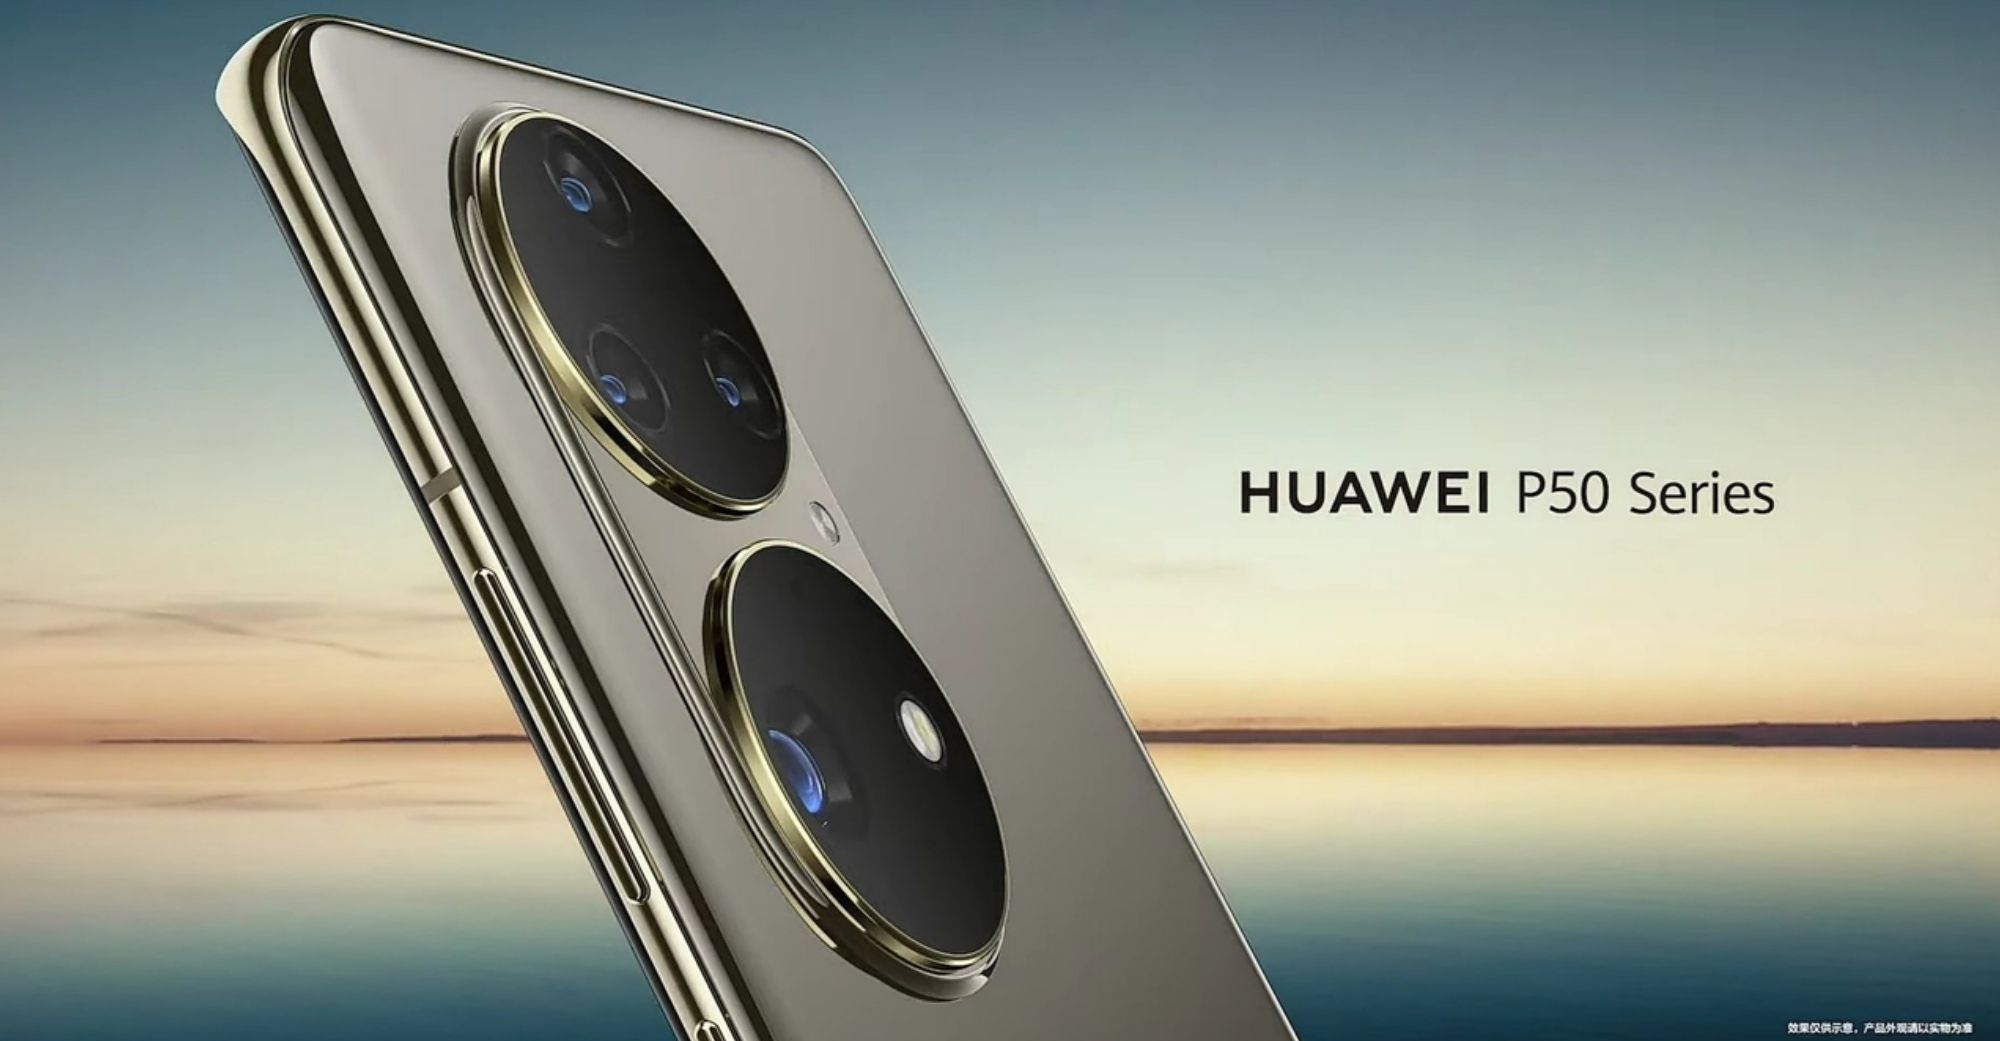 Opisyal na inilunsad ng Huawei ang domestic HarmonyOS, panunukso ang paparating na P50 na punong barko ng telepono